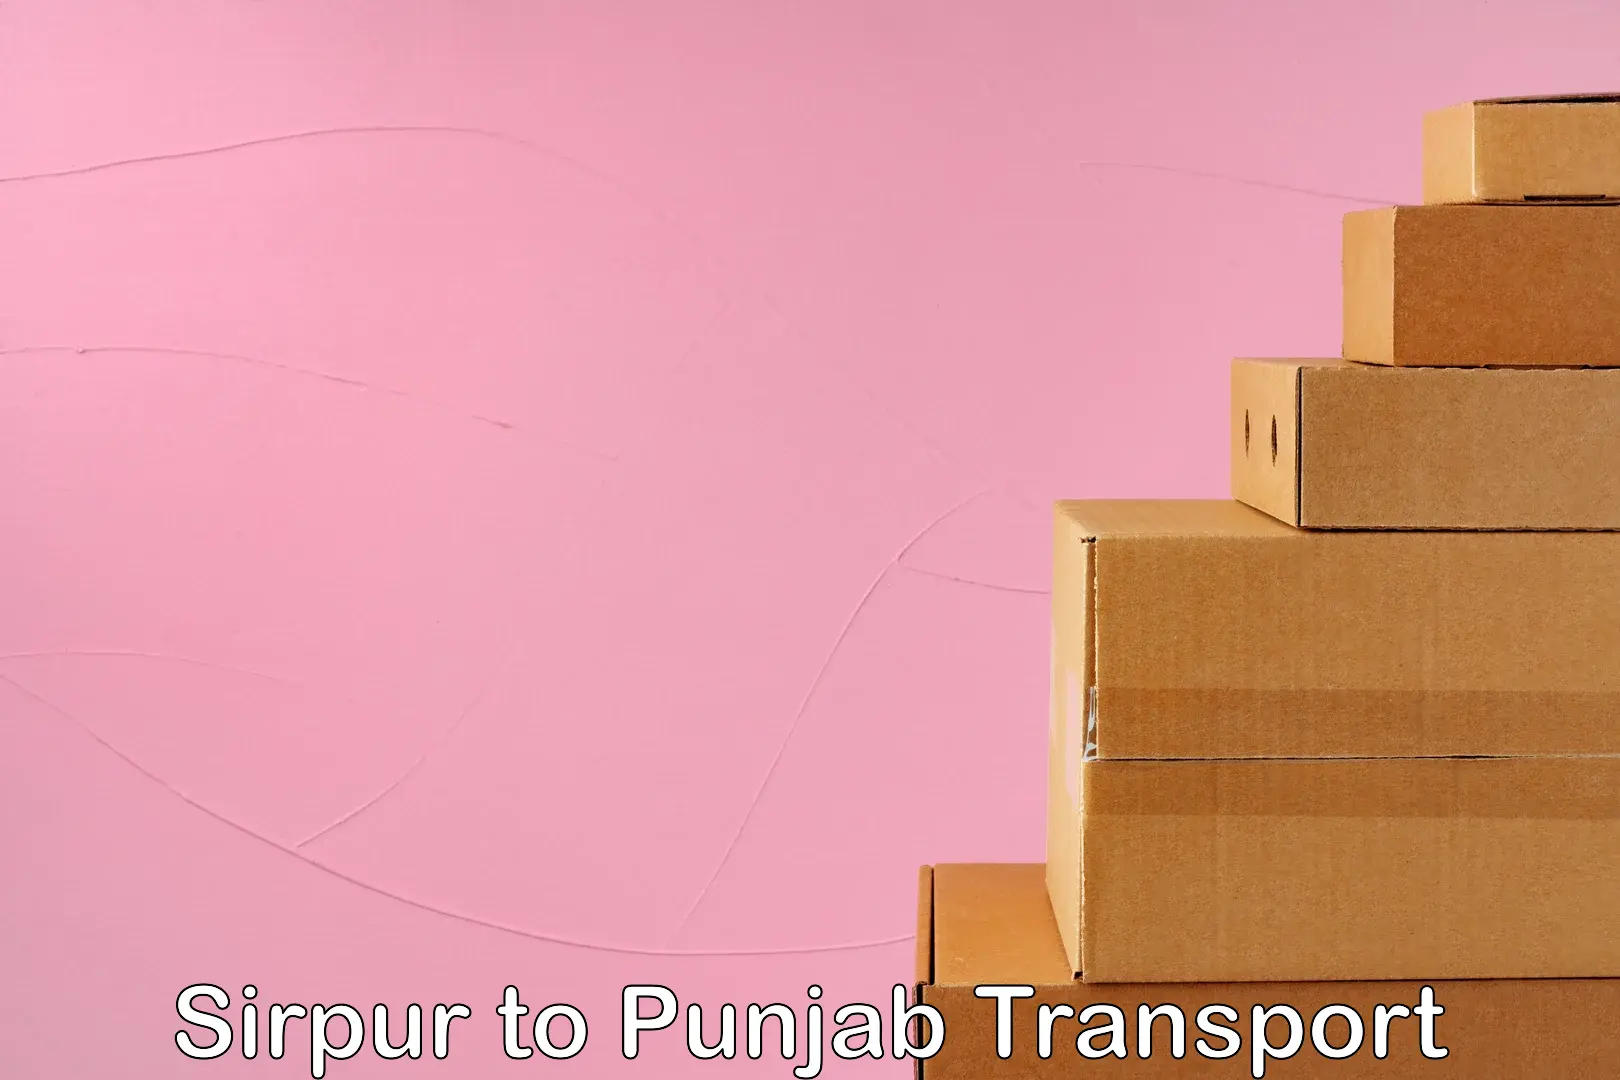 Furniture transport service Sirpur to Punjab